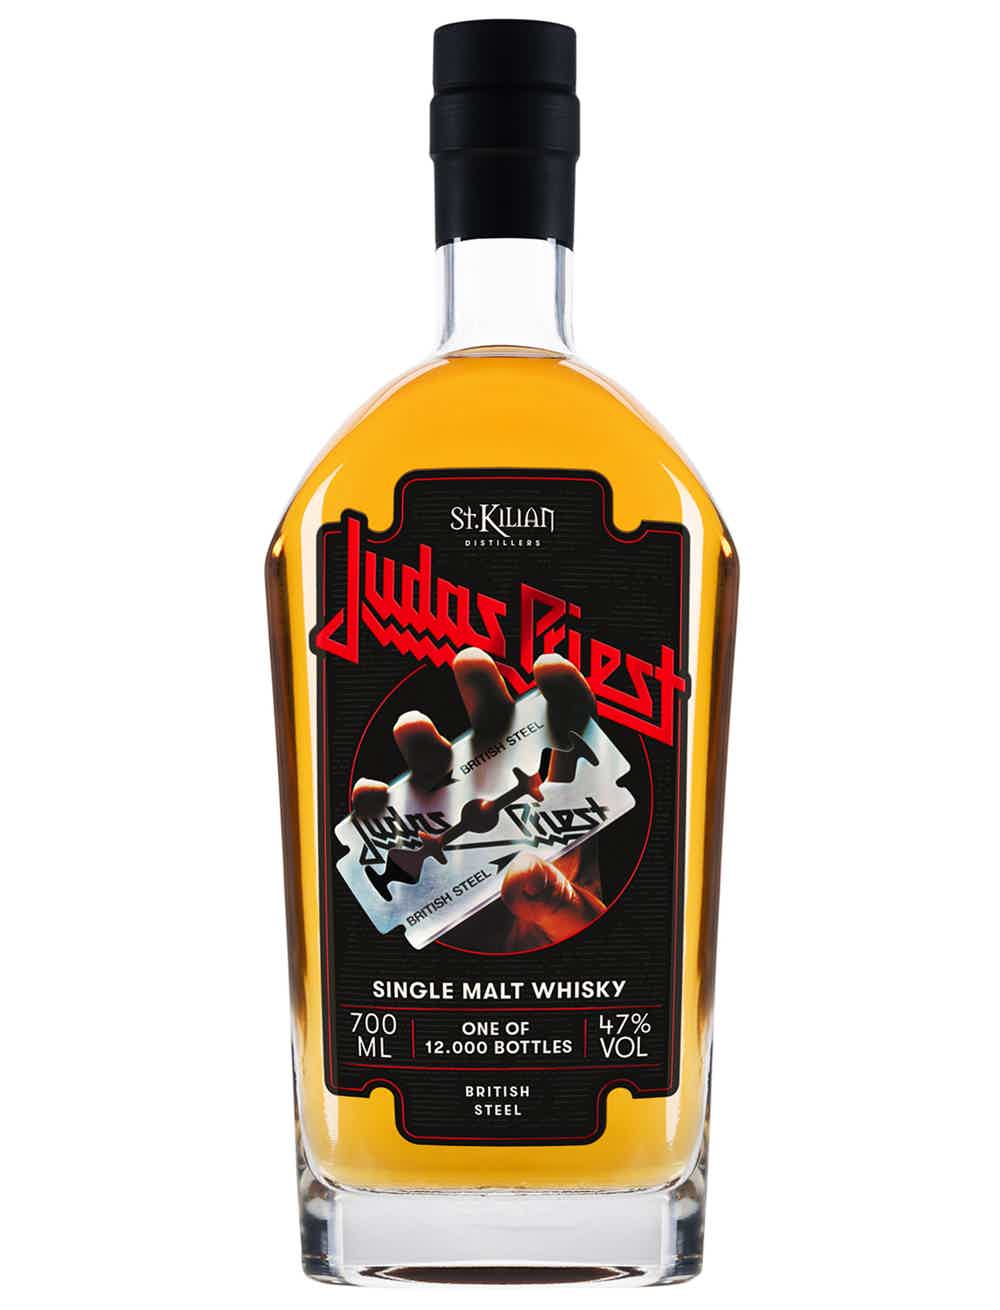 Judas Priest - British Steel - Single Malt Whisky (Peated) 47.0% 0.7L, Spirits